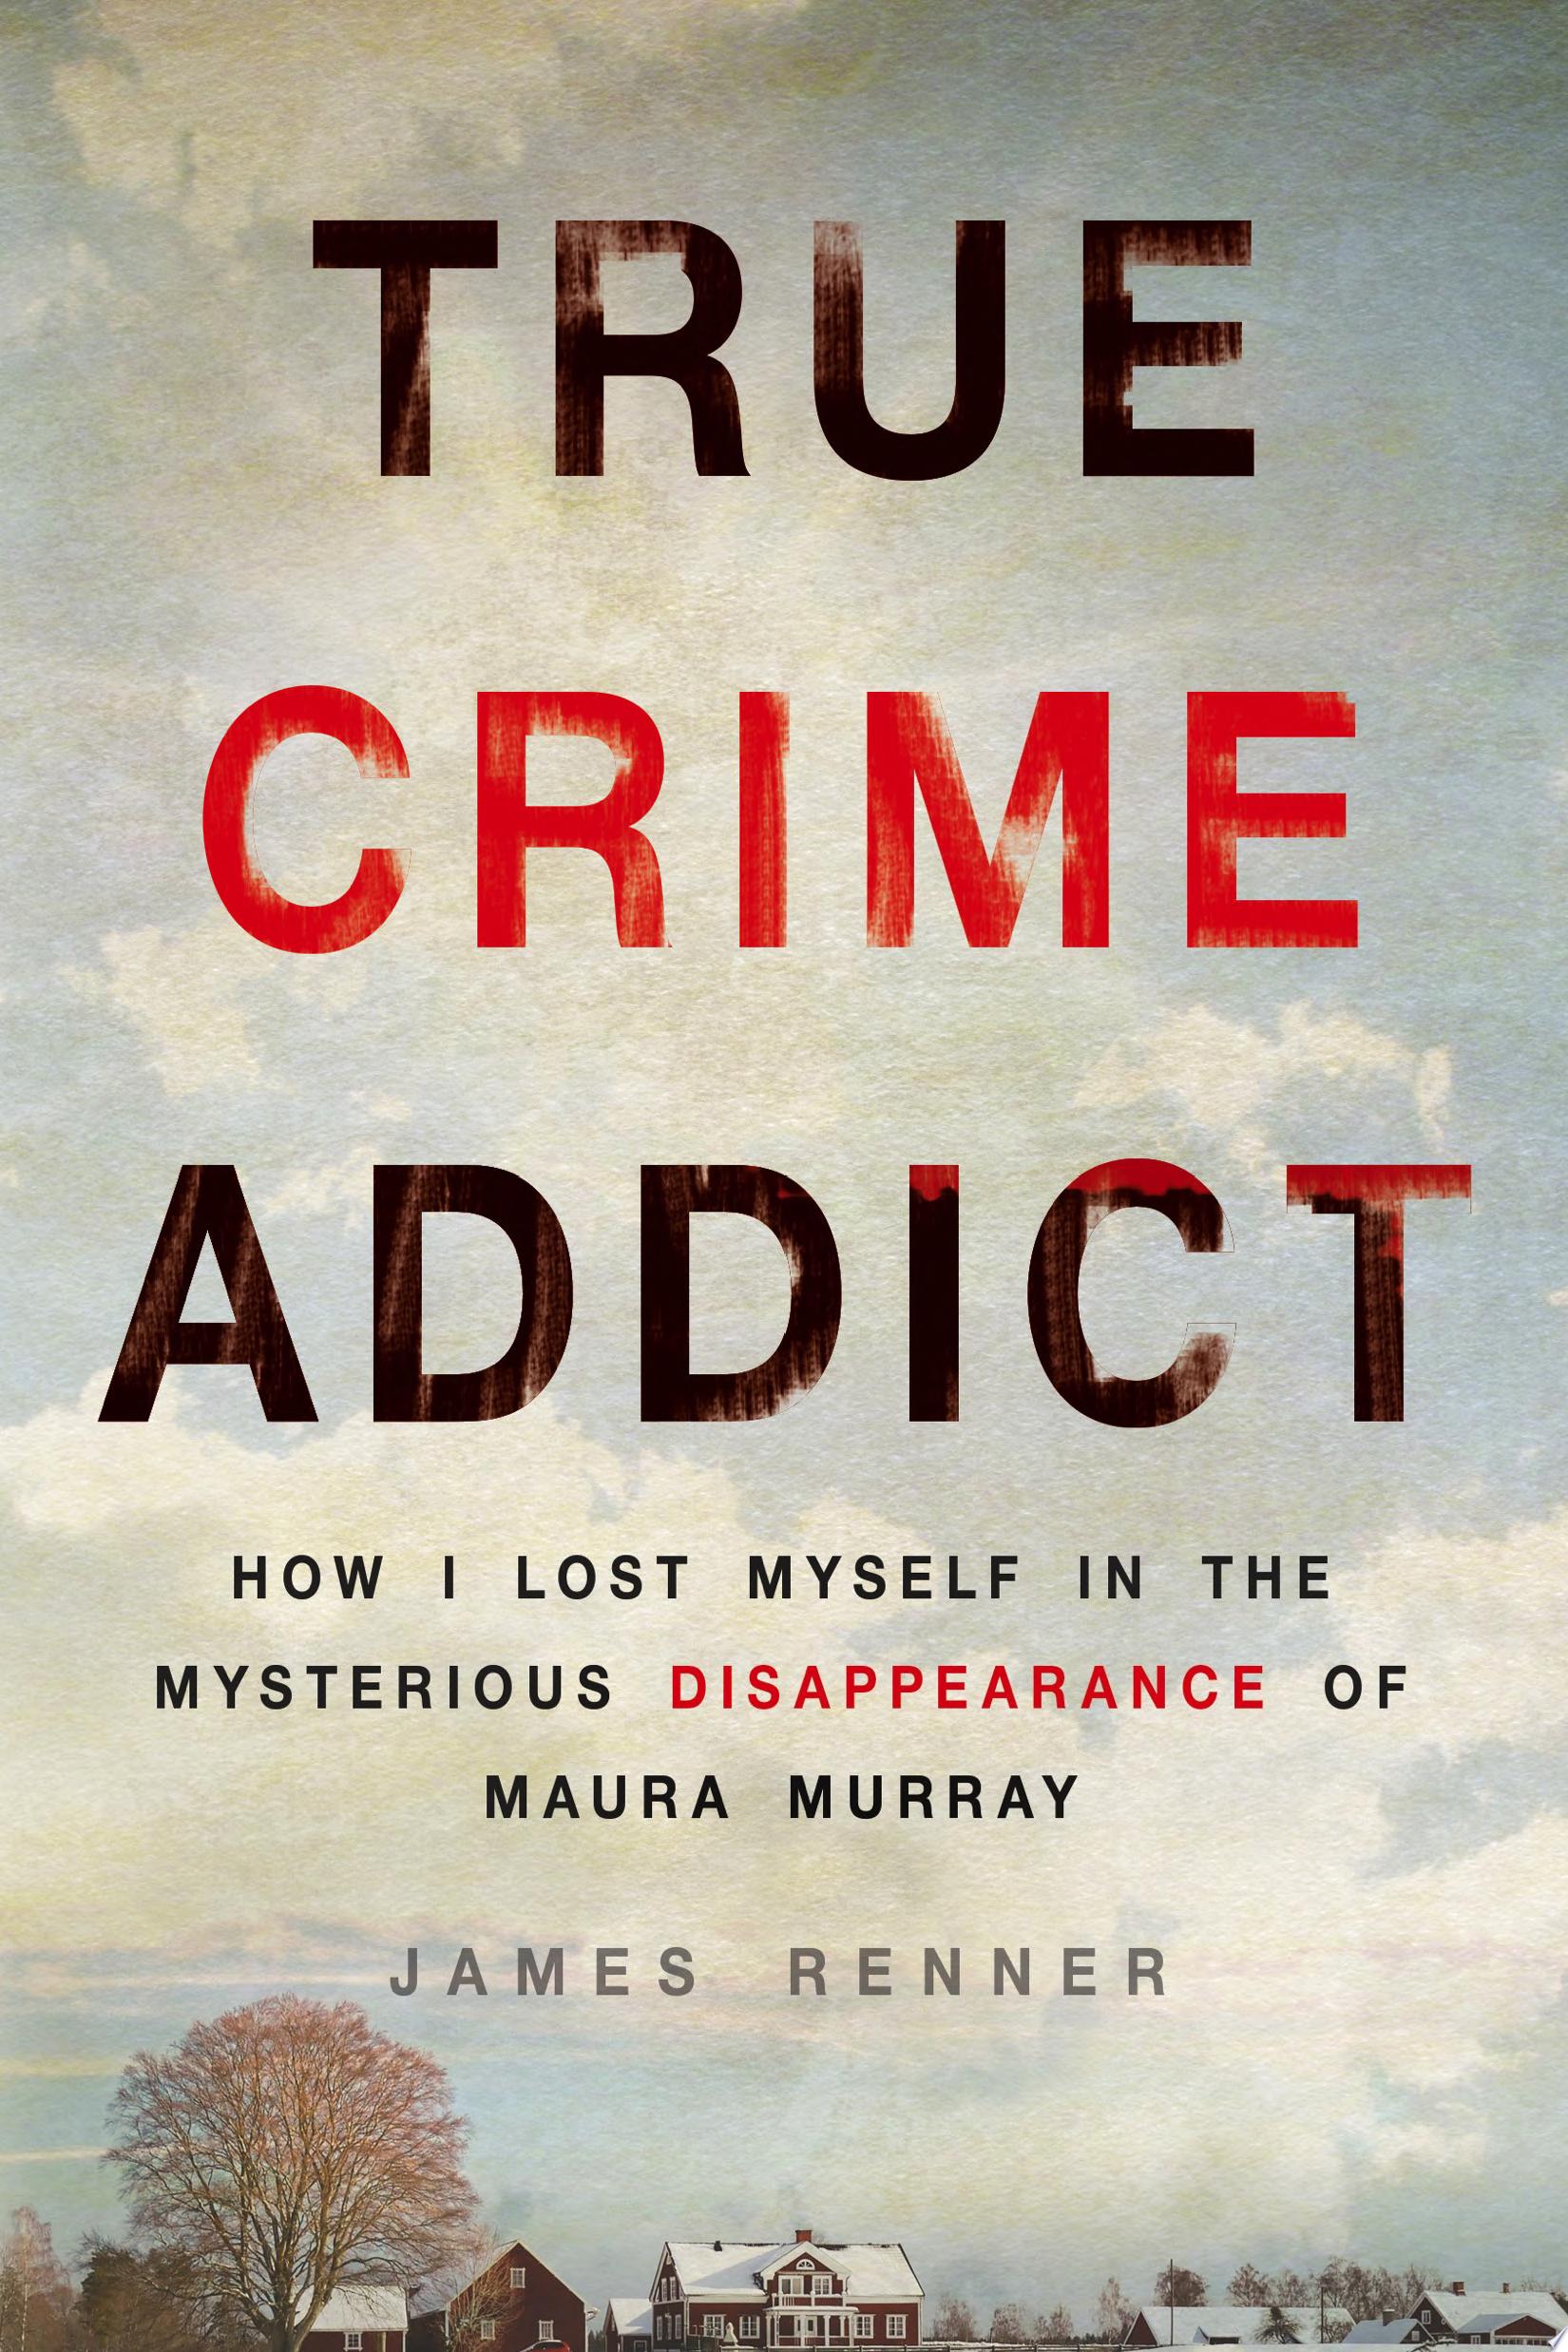 Image for "True Crime Addict"